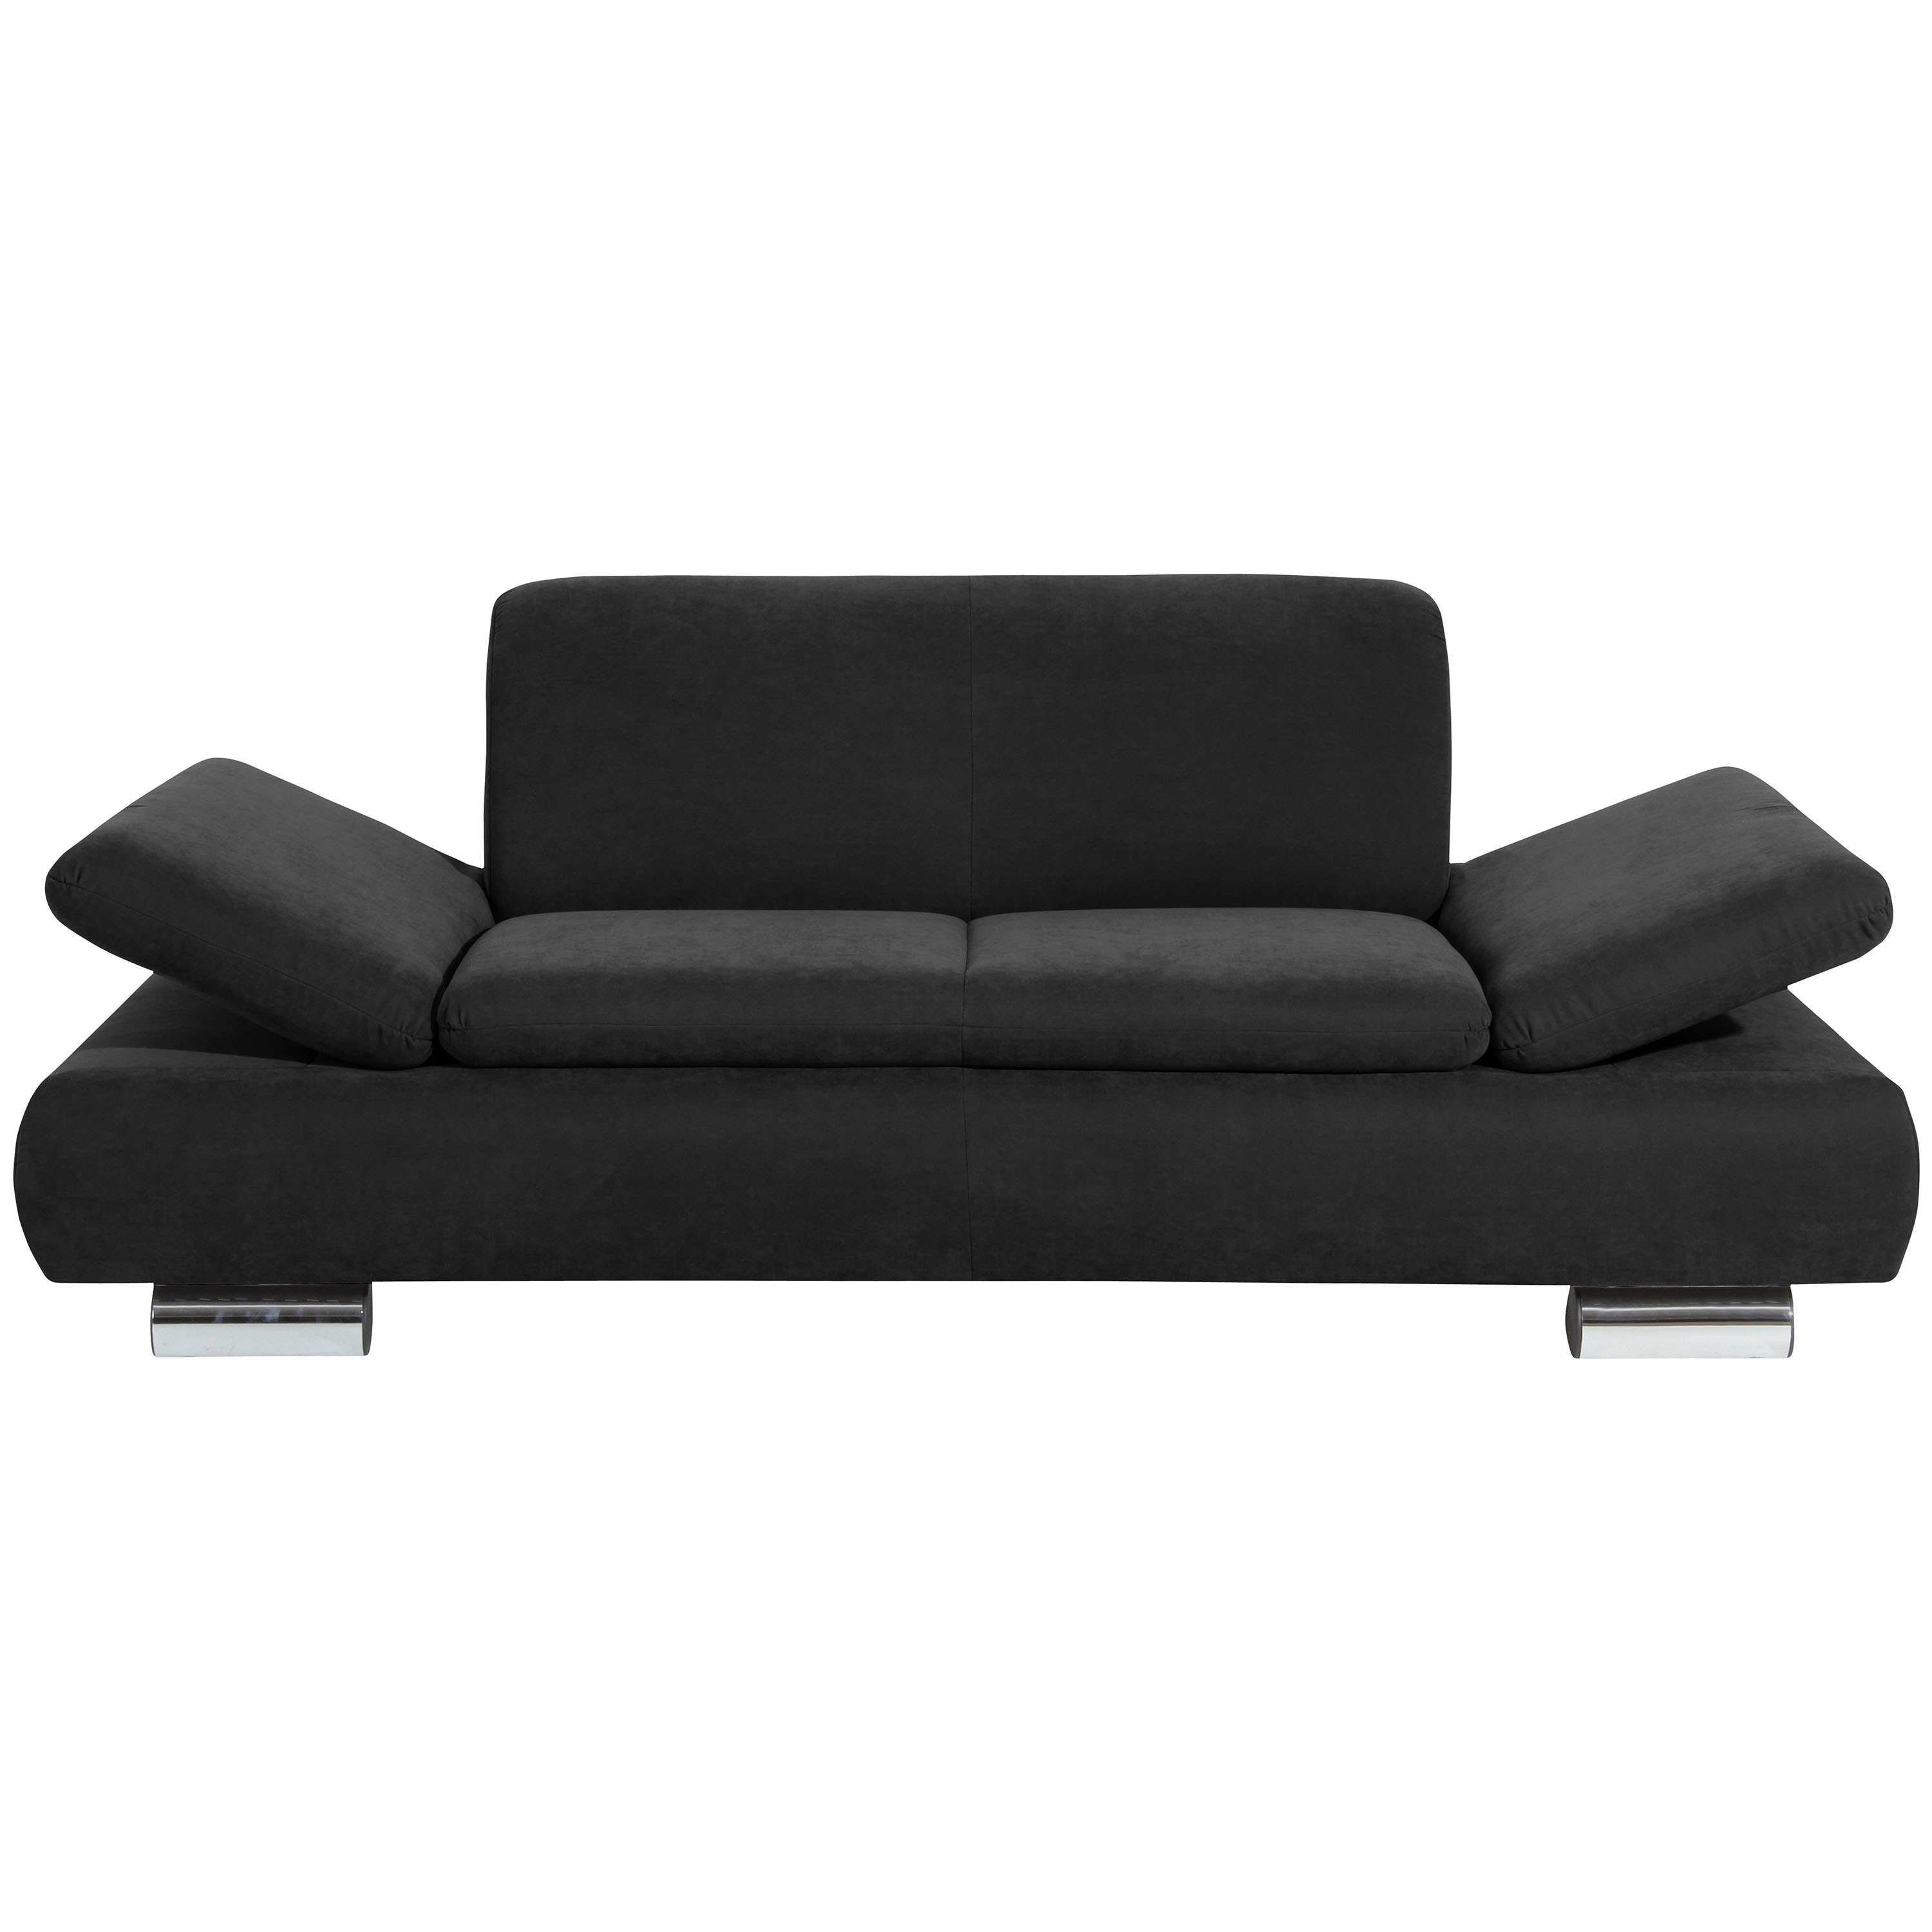 frontansicht von einem schwazen 2-sitzer sofa mit hochgeklappten armteilen und verchromten metallfüssen